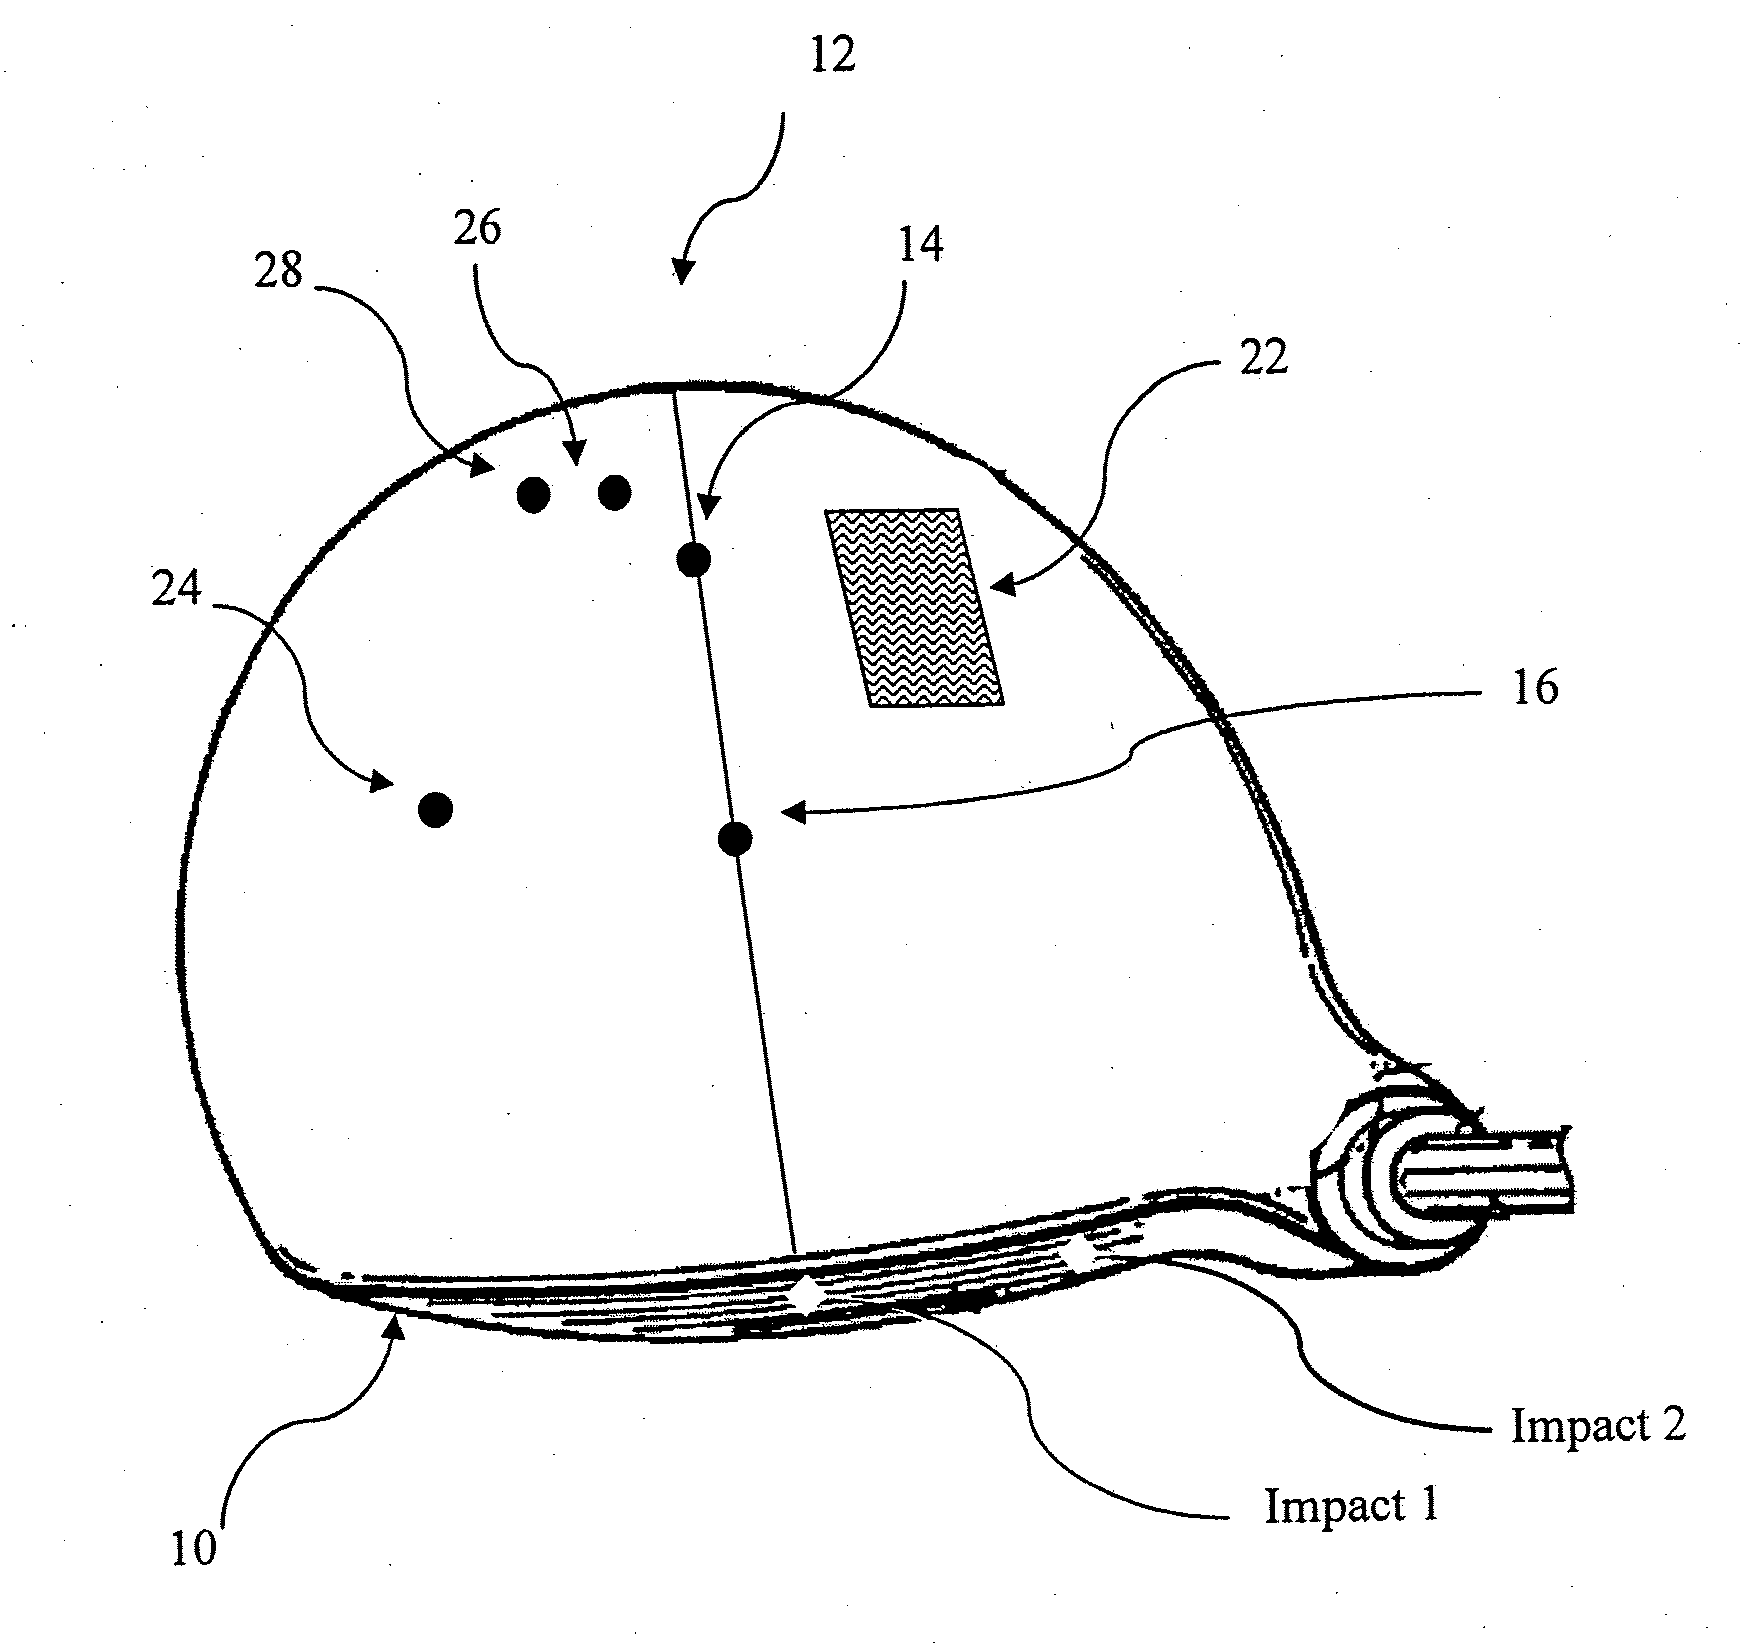 Golf club head comprising a piezoelectric sensor